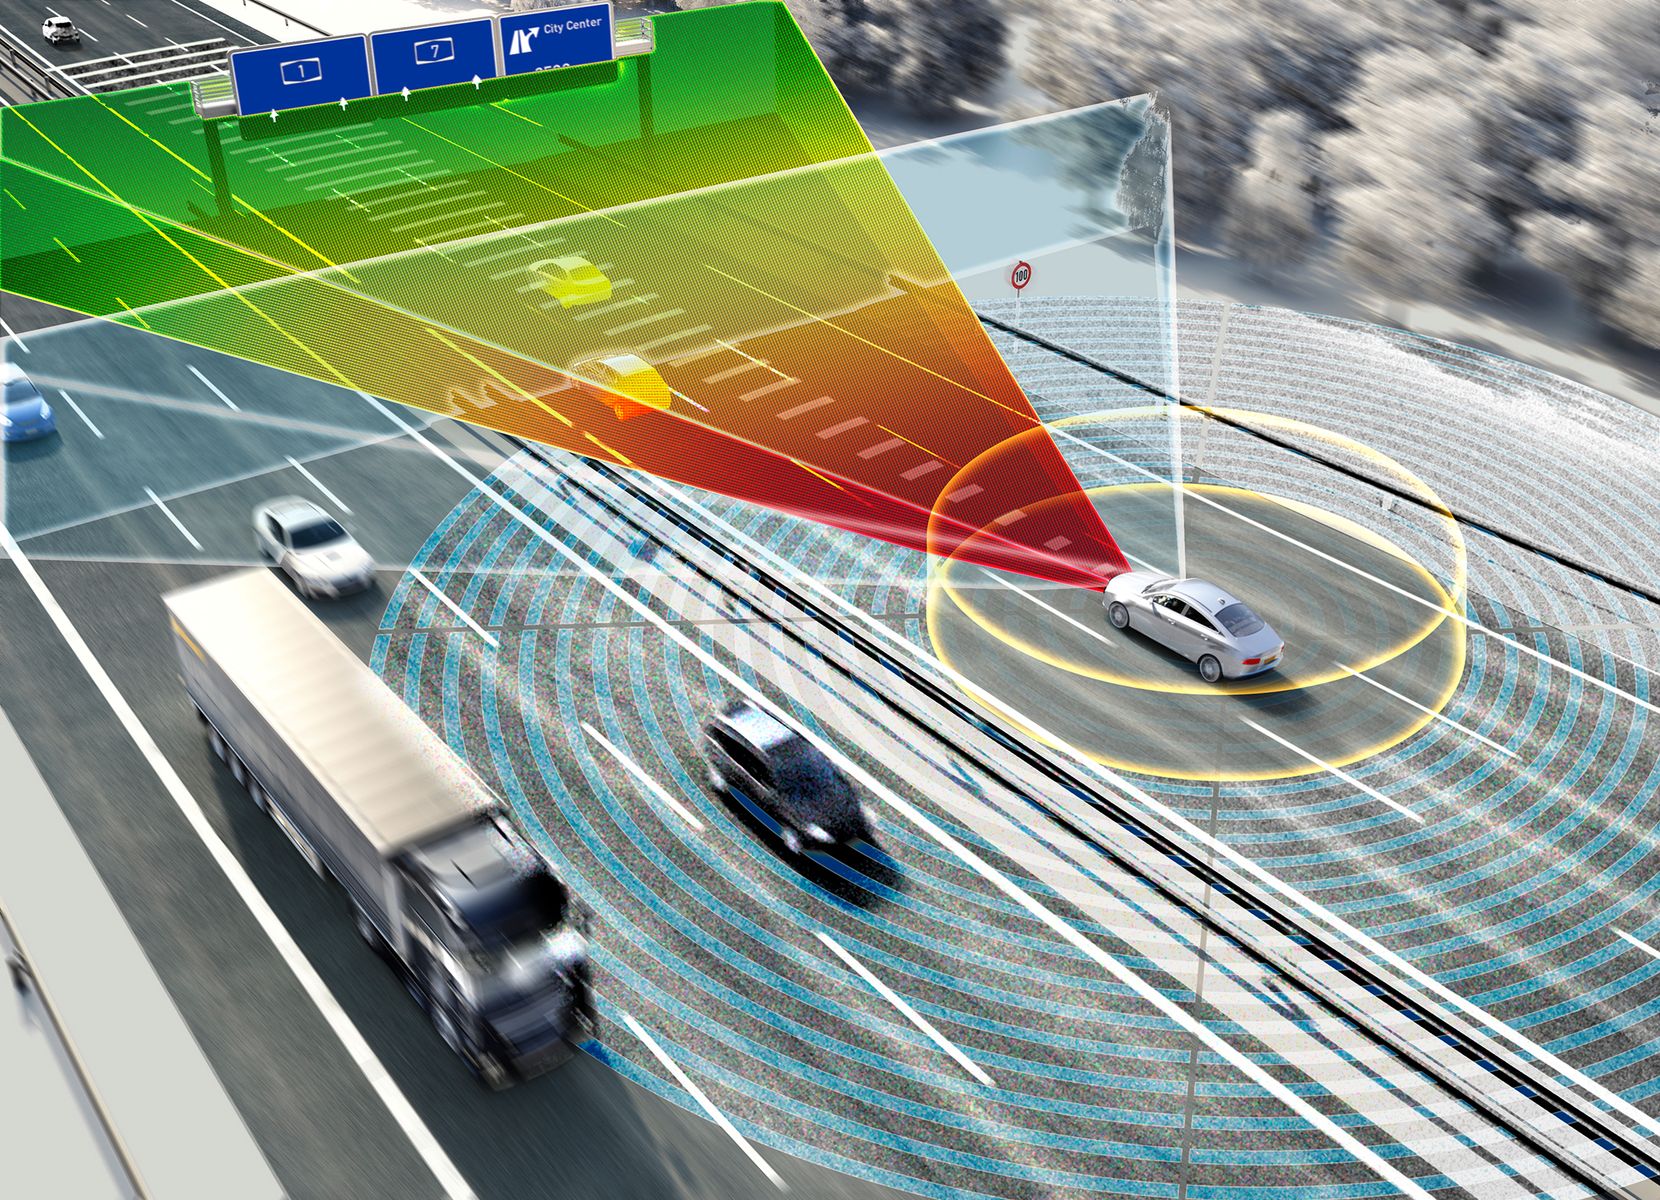 Visualisierung eines Autos, das mit Sensortechnologie die Umgebung scannt.